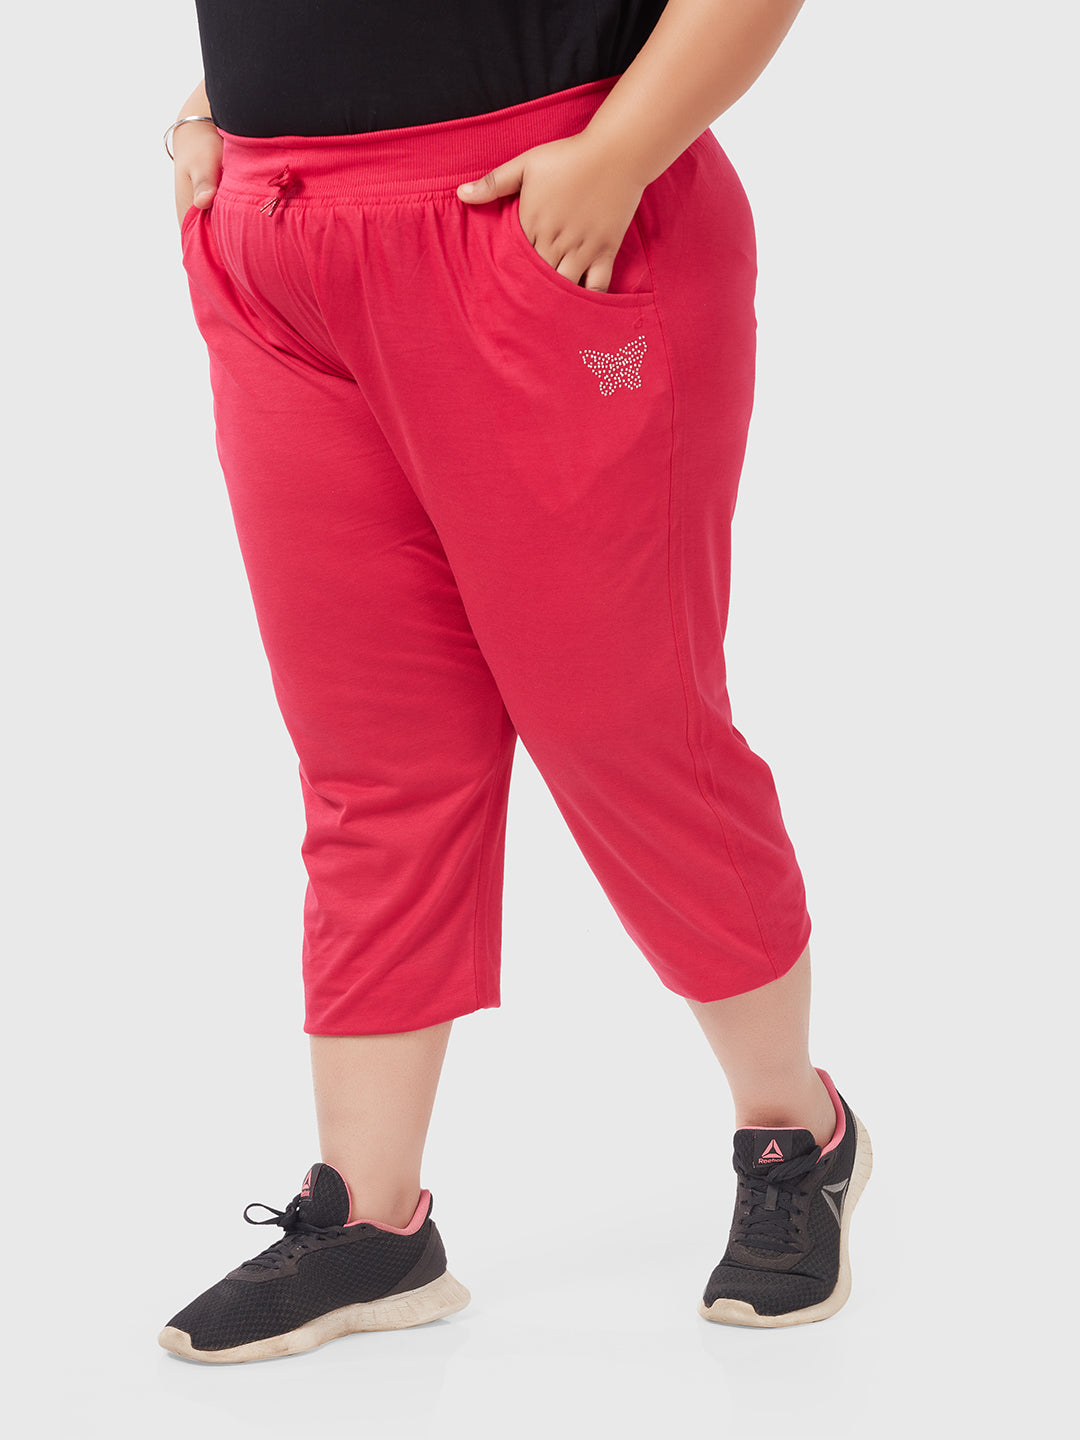 Cotton Capris For Women - Half Capri Pants - Pink